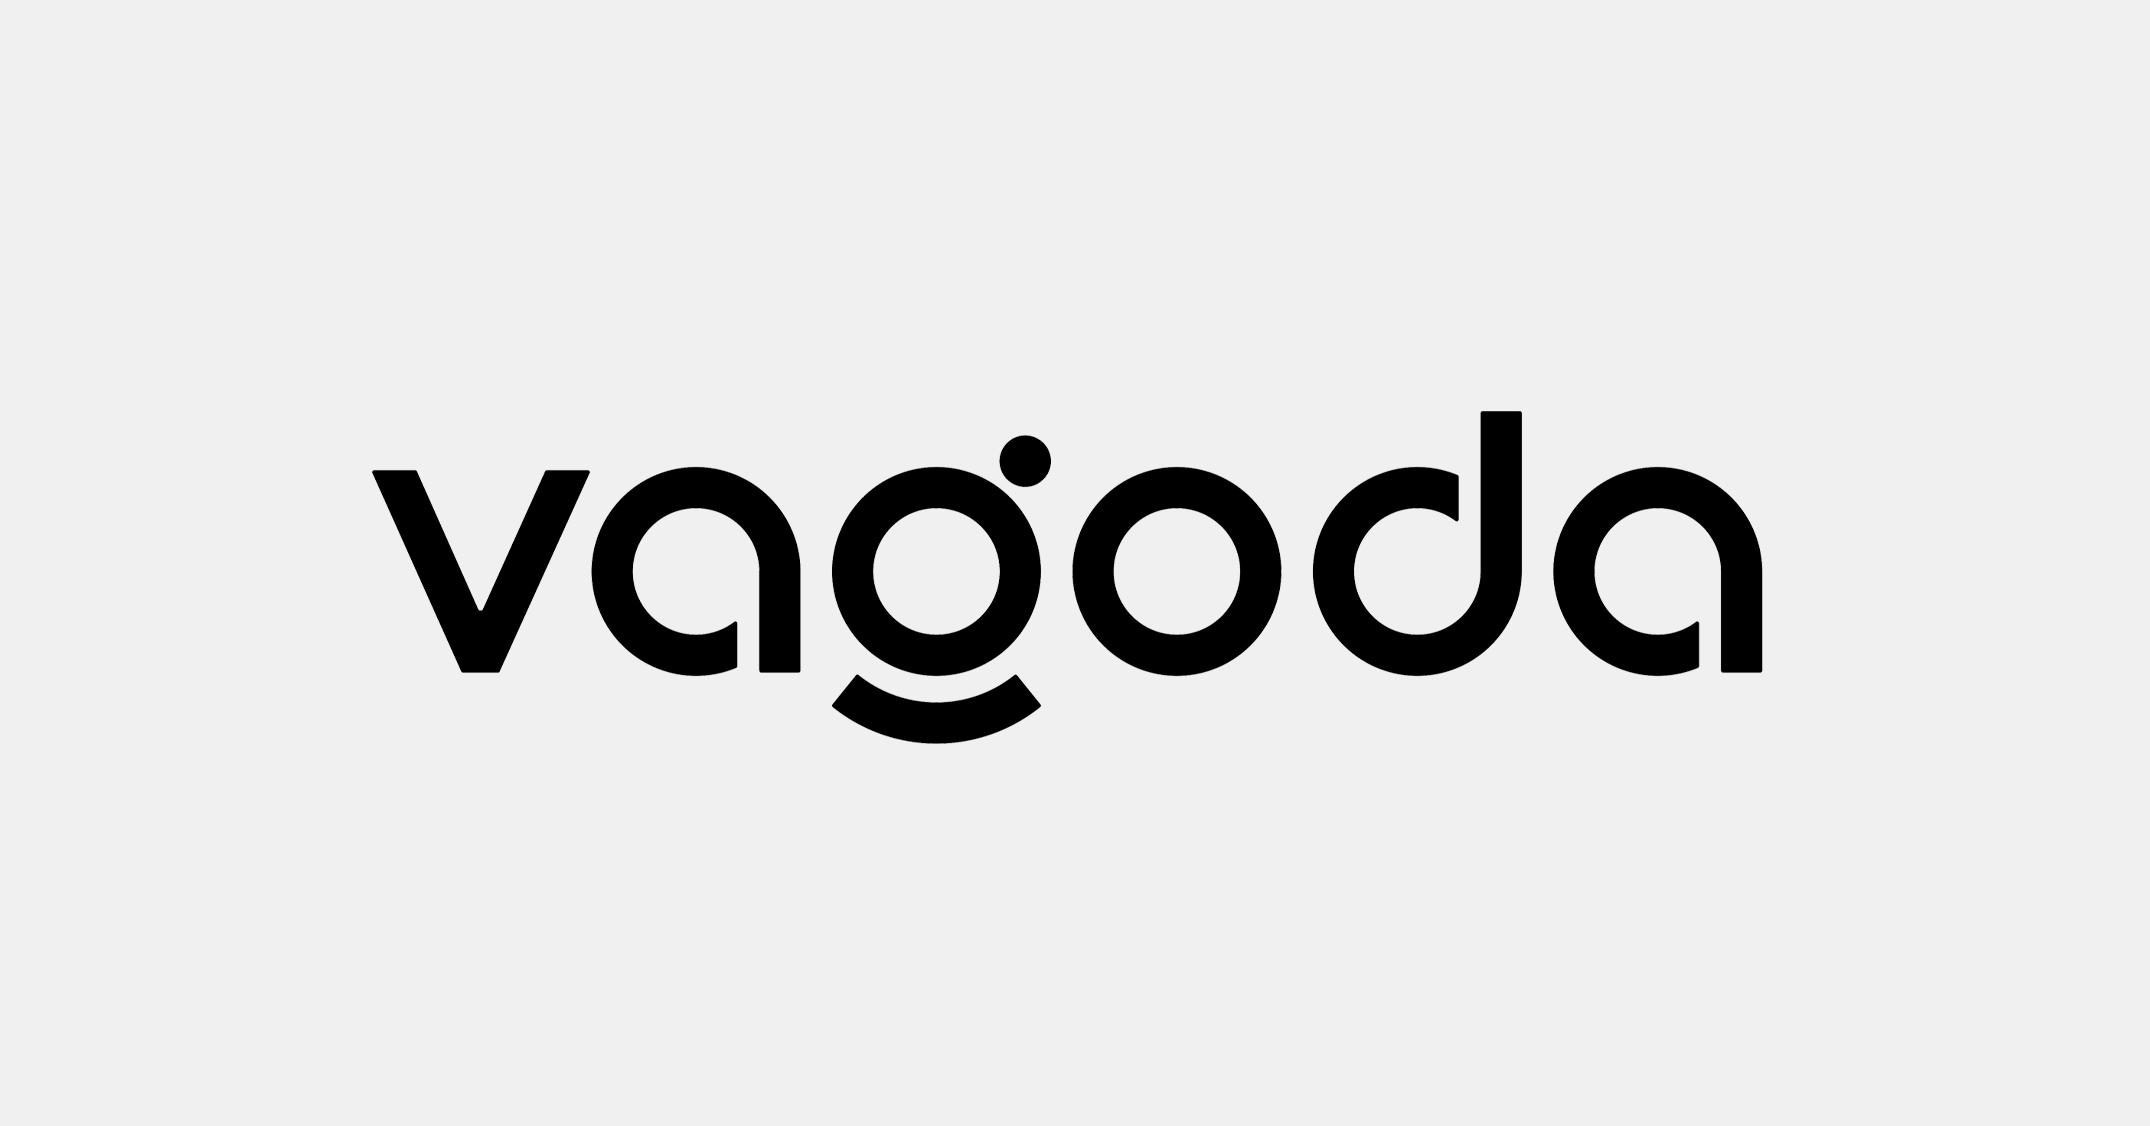 دانلود فونت تایپوگرافی انگلیسی Vagoda Font با فرمت EPS